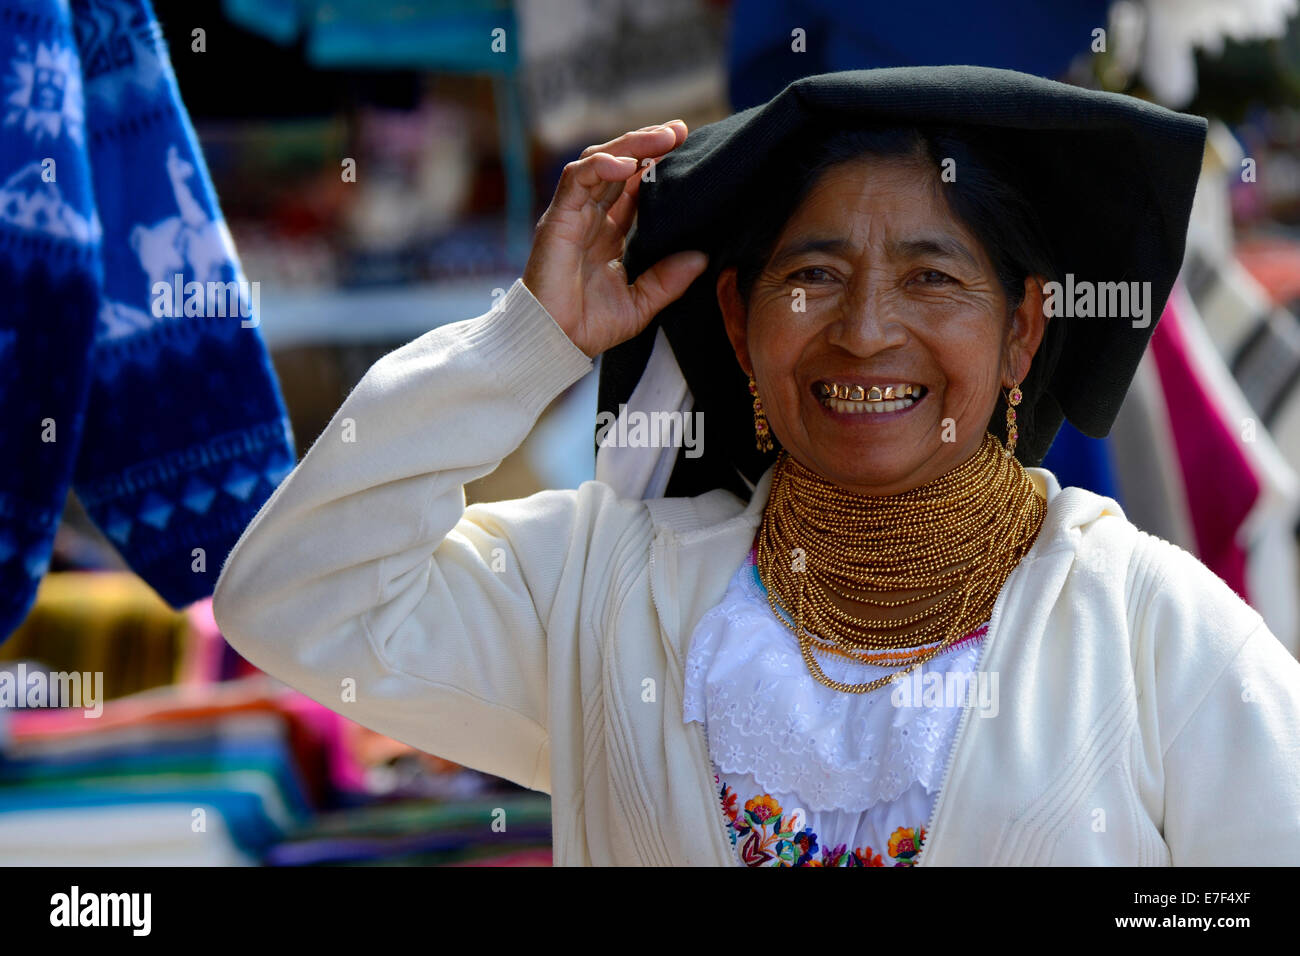 Market woman wearing a traditional Ecuadorian costume, Quito, Ecuador, South America Stock Photo